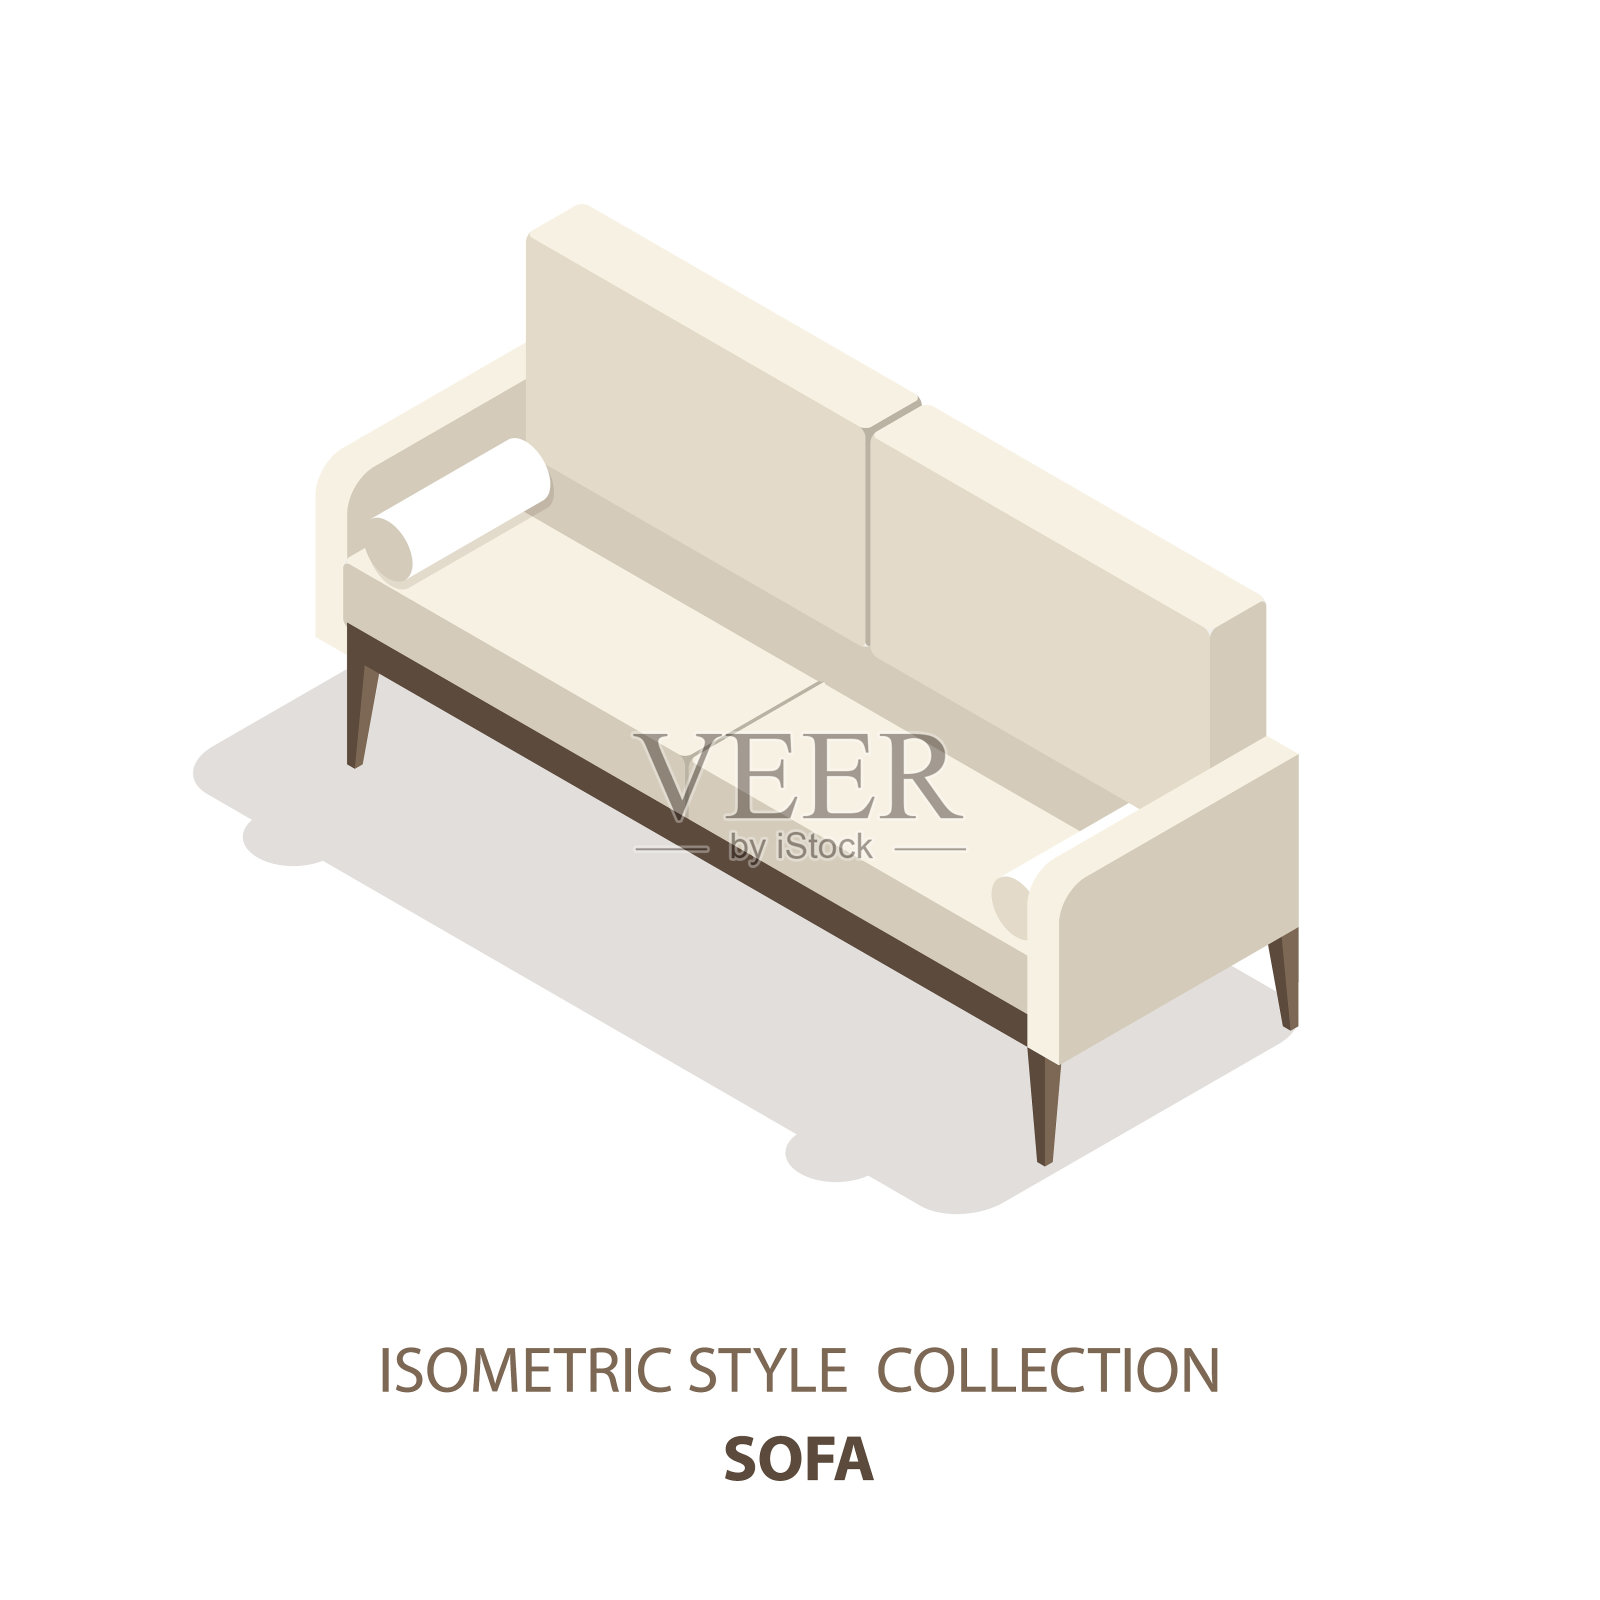 沙发等距斯堪的纳维亚风格矢量图标或标志。沙发的三维矢量图。等距的家具。用于网页设计、手机应用、信息图表等的室内元素。插画图片素材